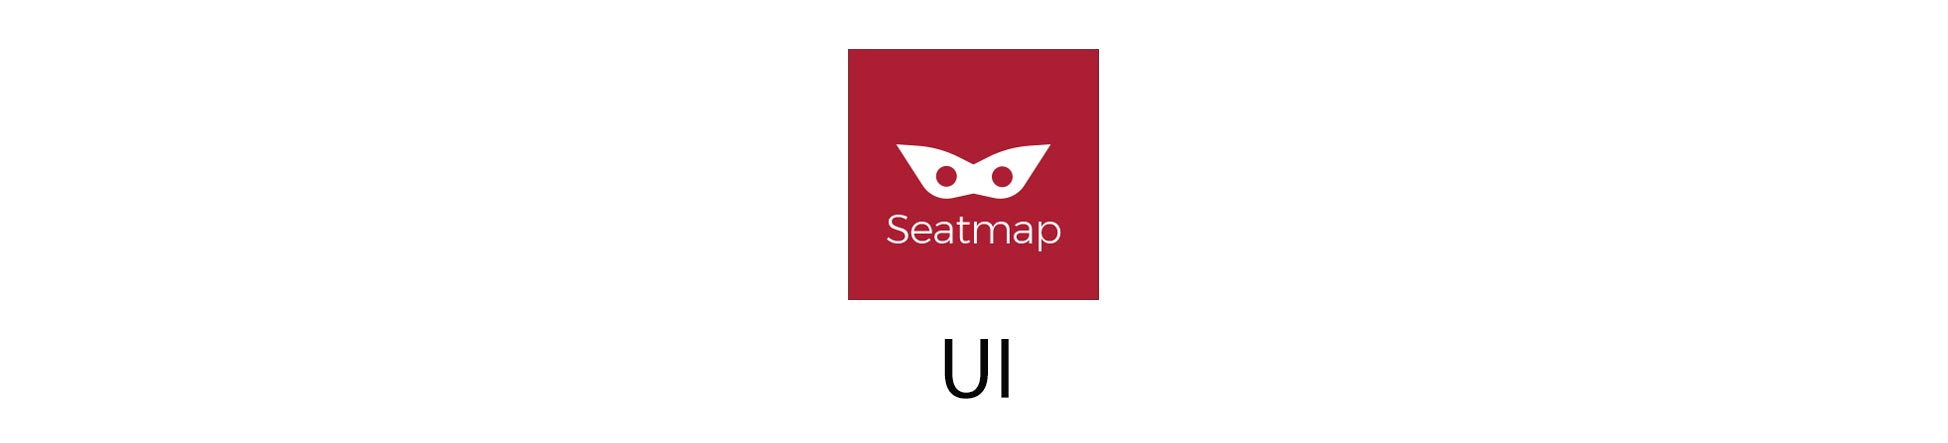 Seatmap